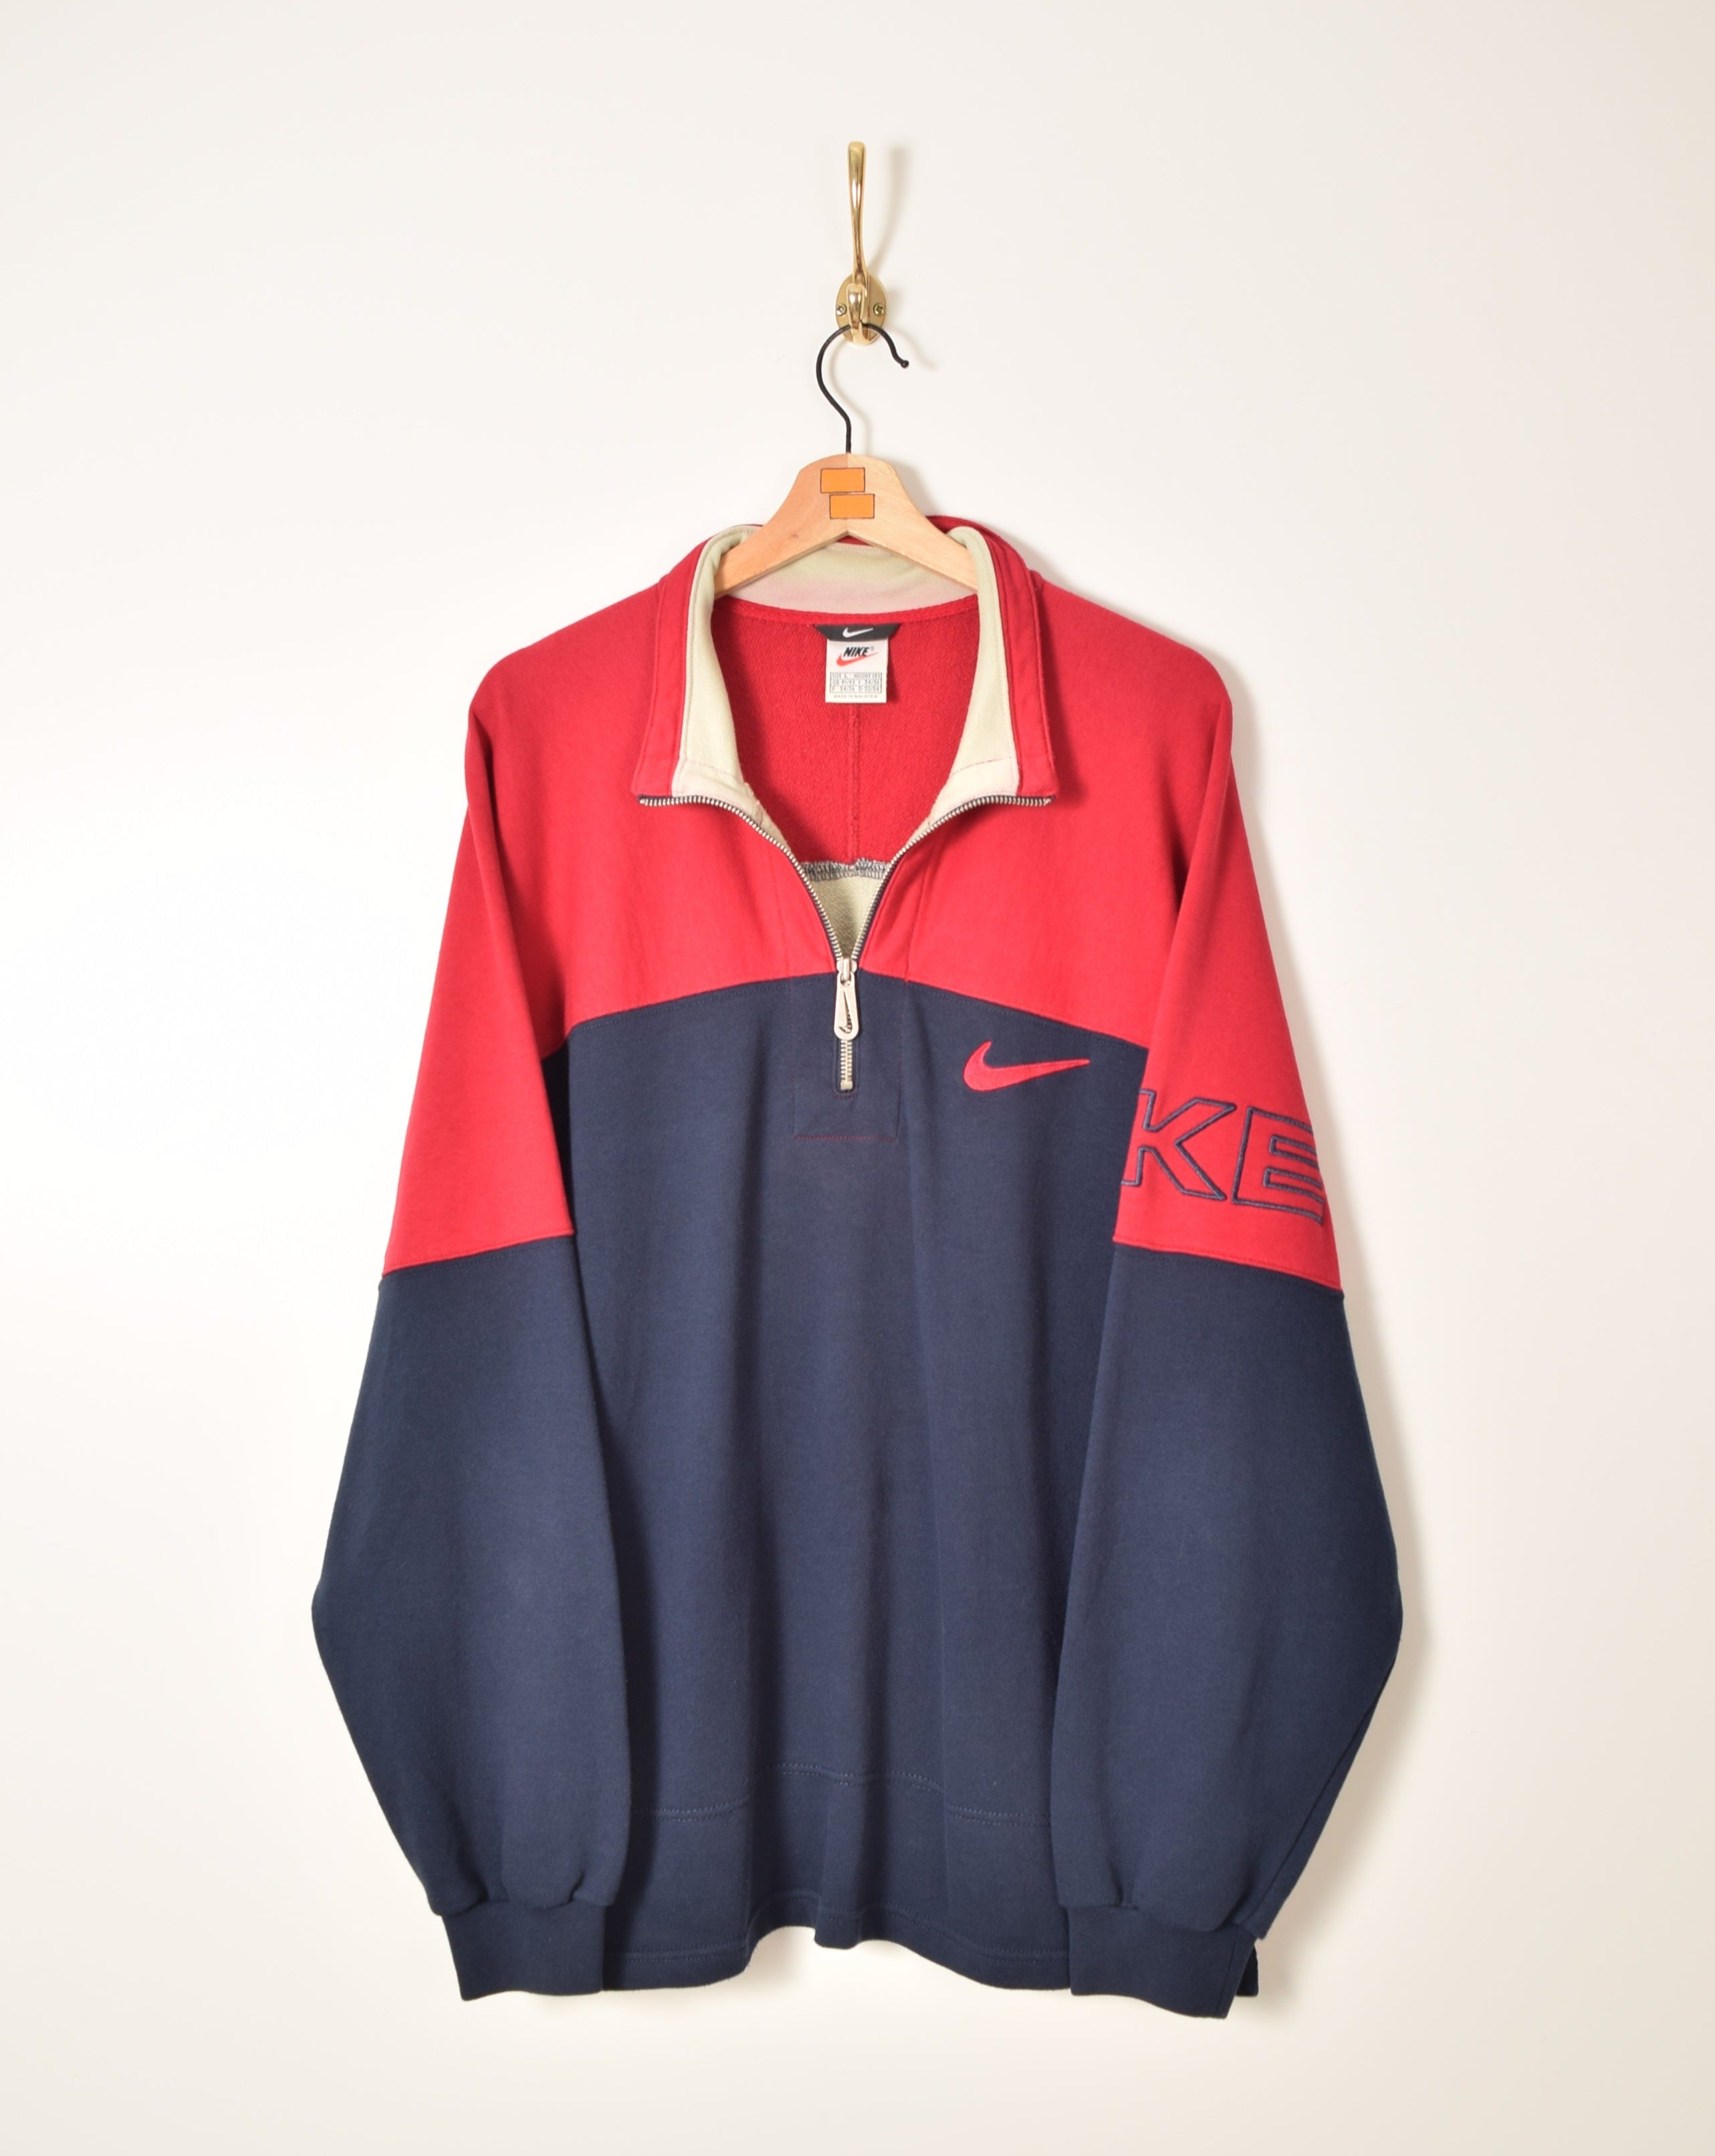 Nike Vintage Half Sweatshirt – FROM THE BLOCK VINTAGE